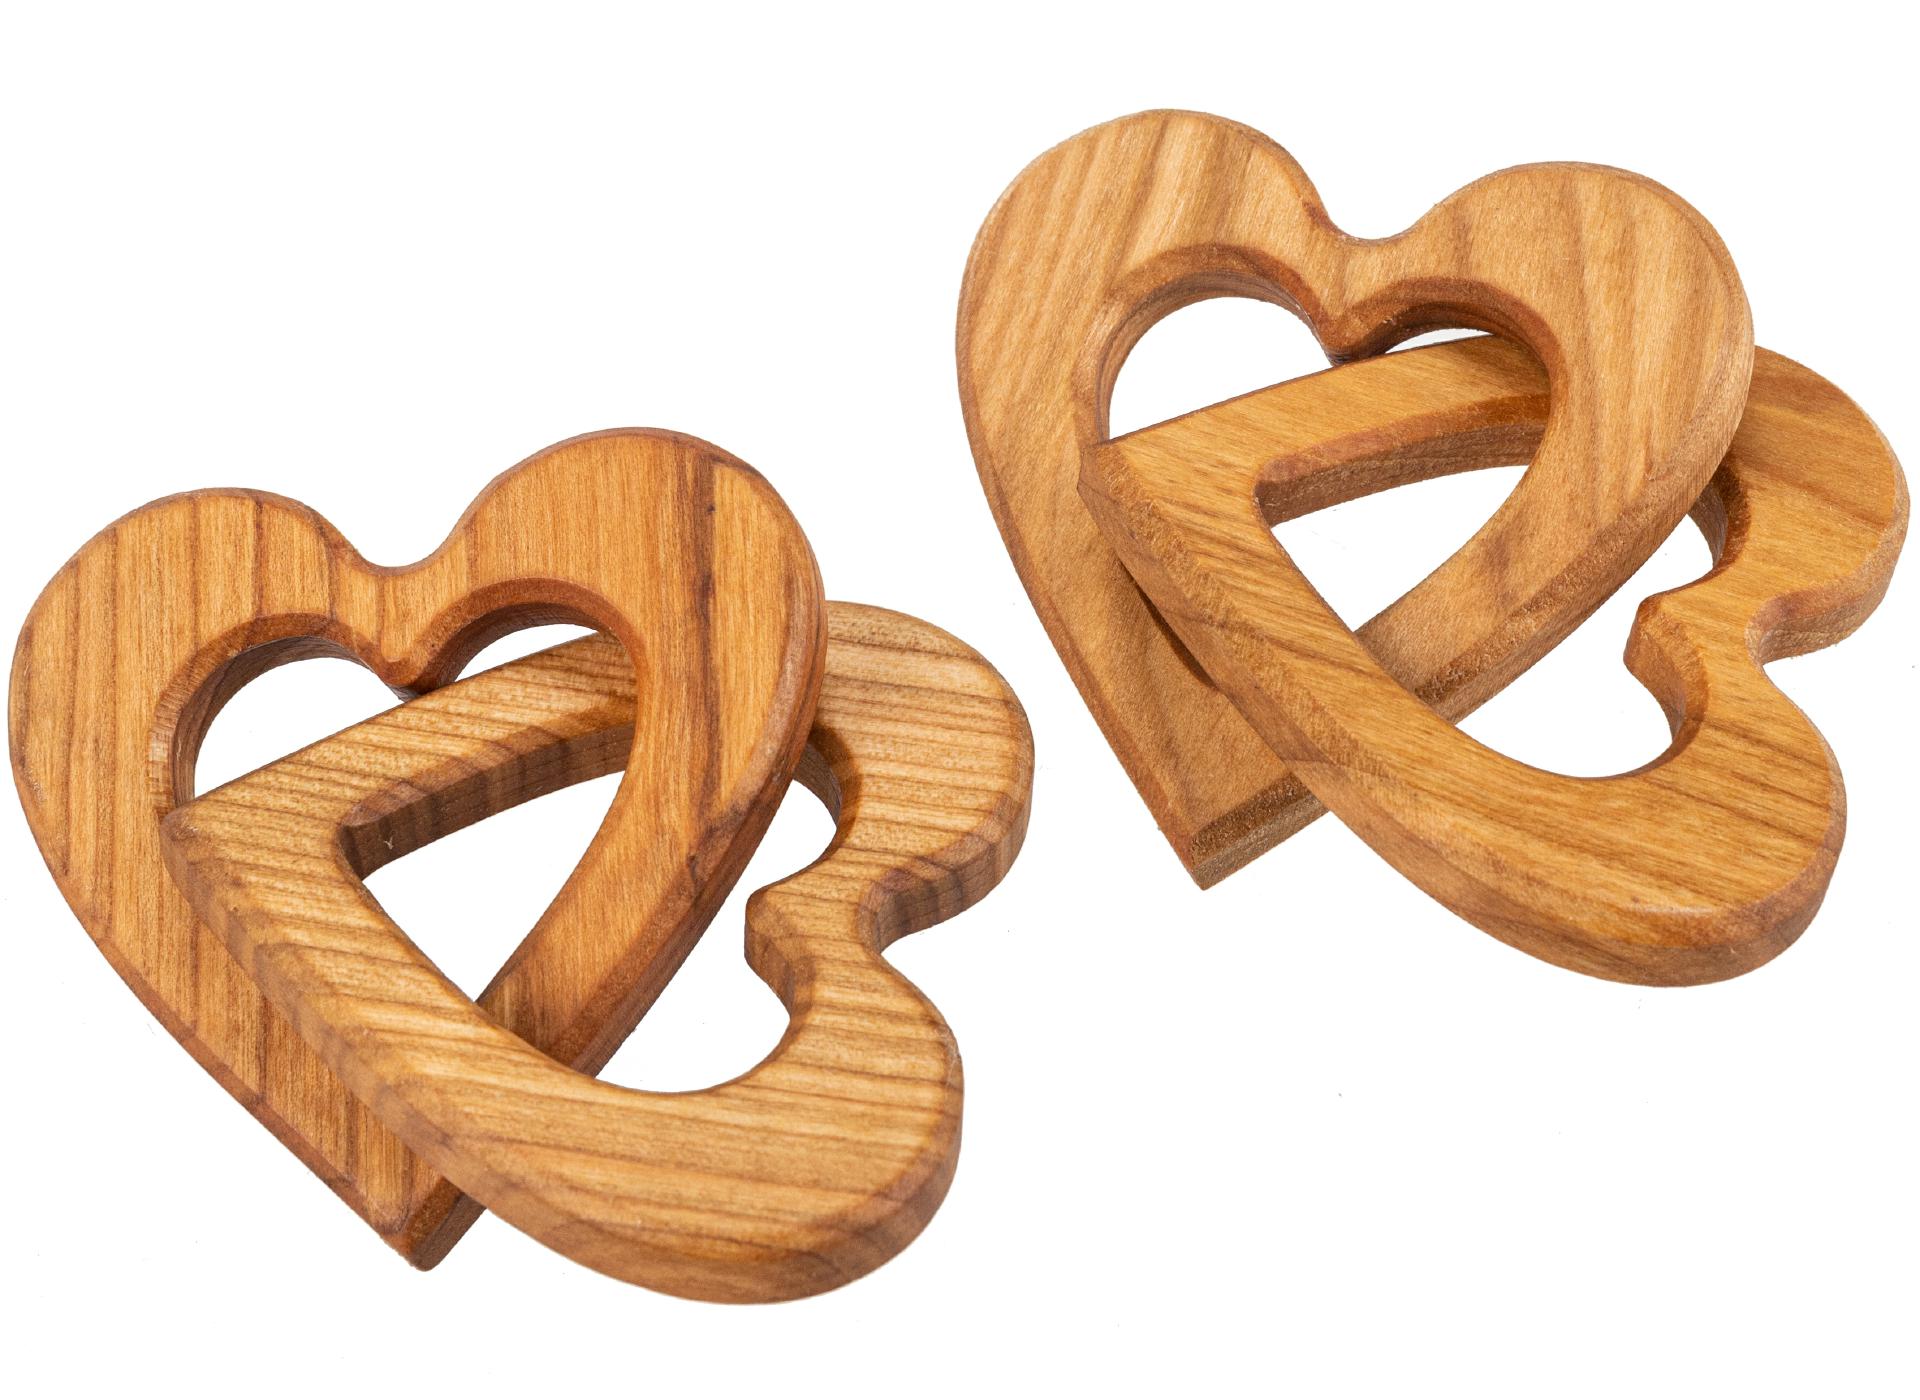 Zwei verschlungene Holz Herzen aus Kirsch Holz perfekt zum Beschriften fuer Paare